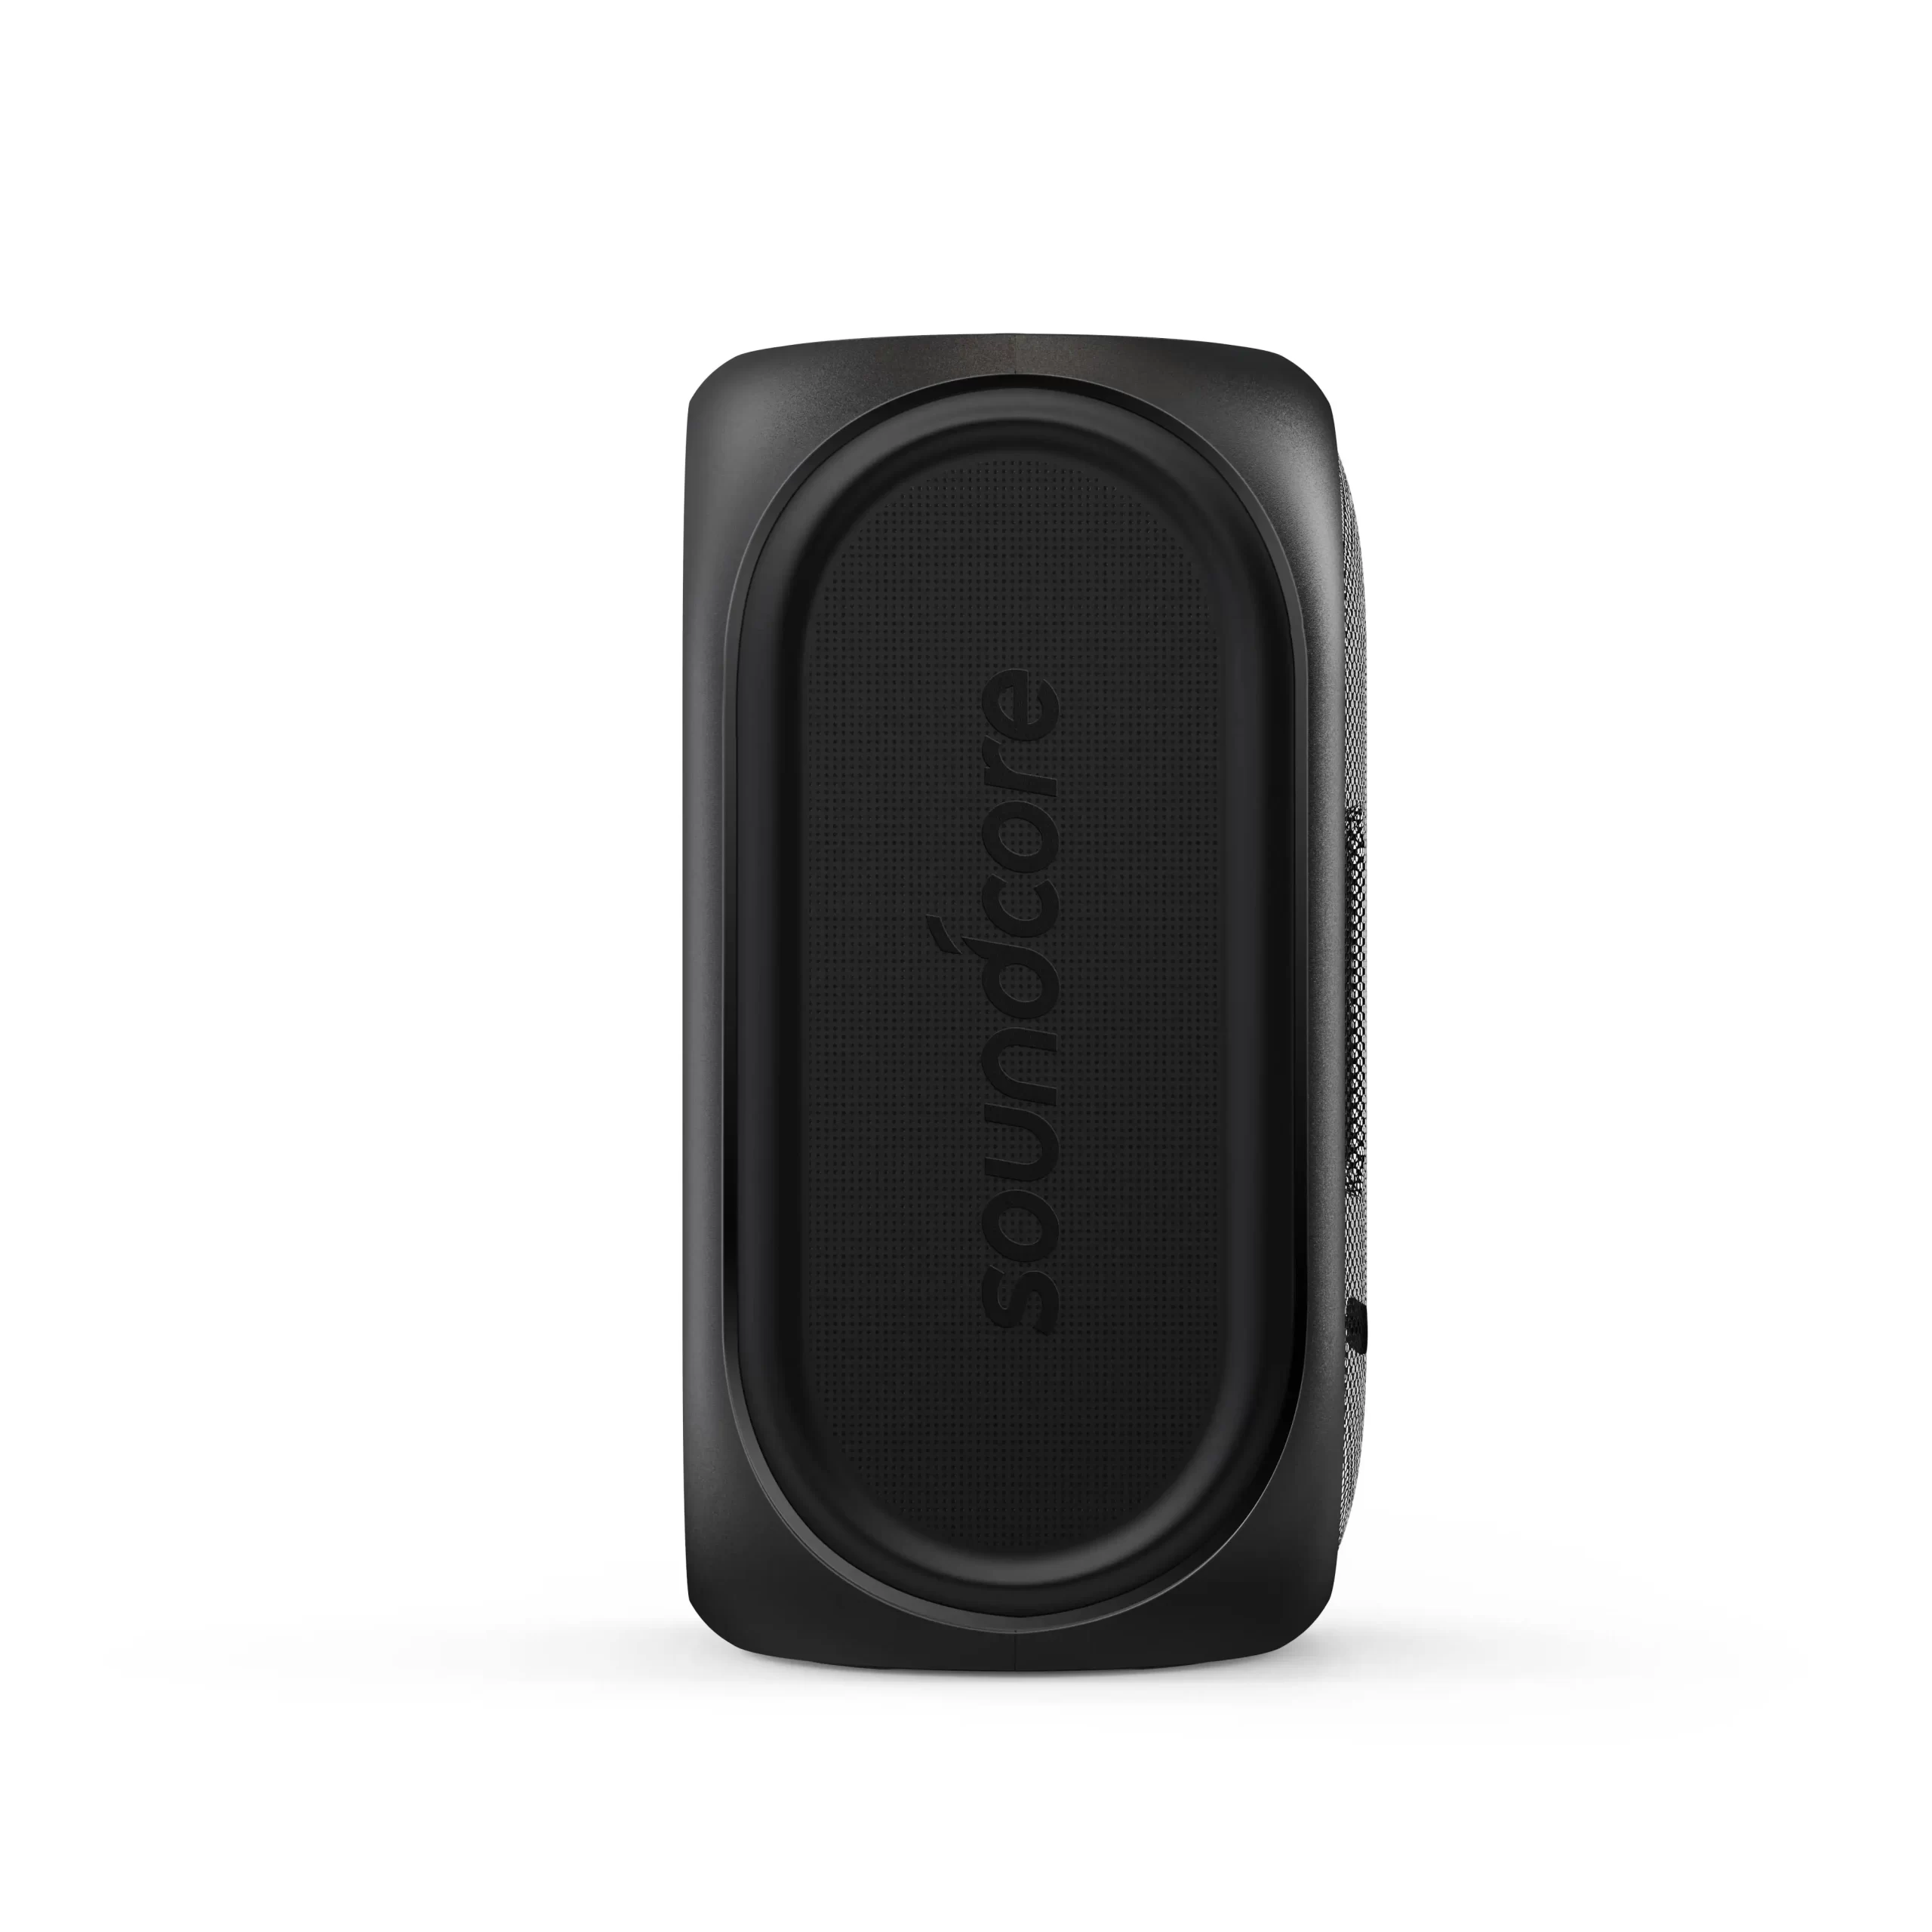 اسپیکر بلوتوث انکر Anker Soundcore Rave Plus Portable Speaker